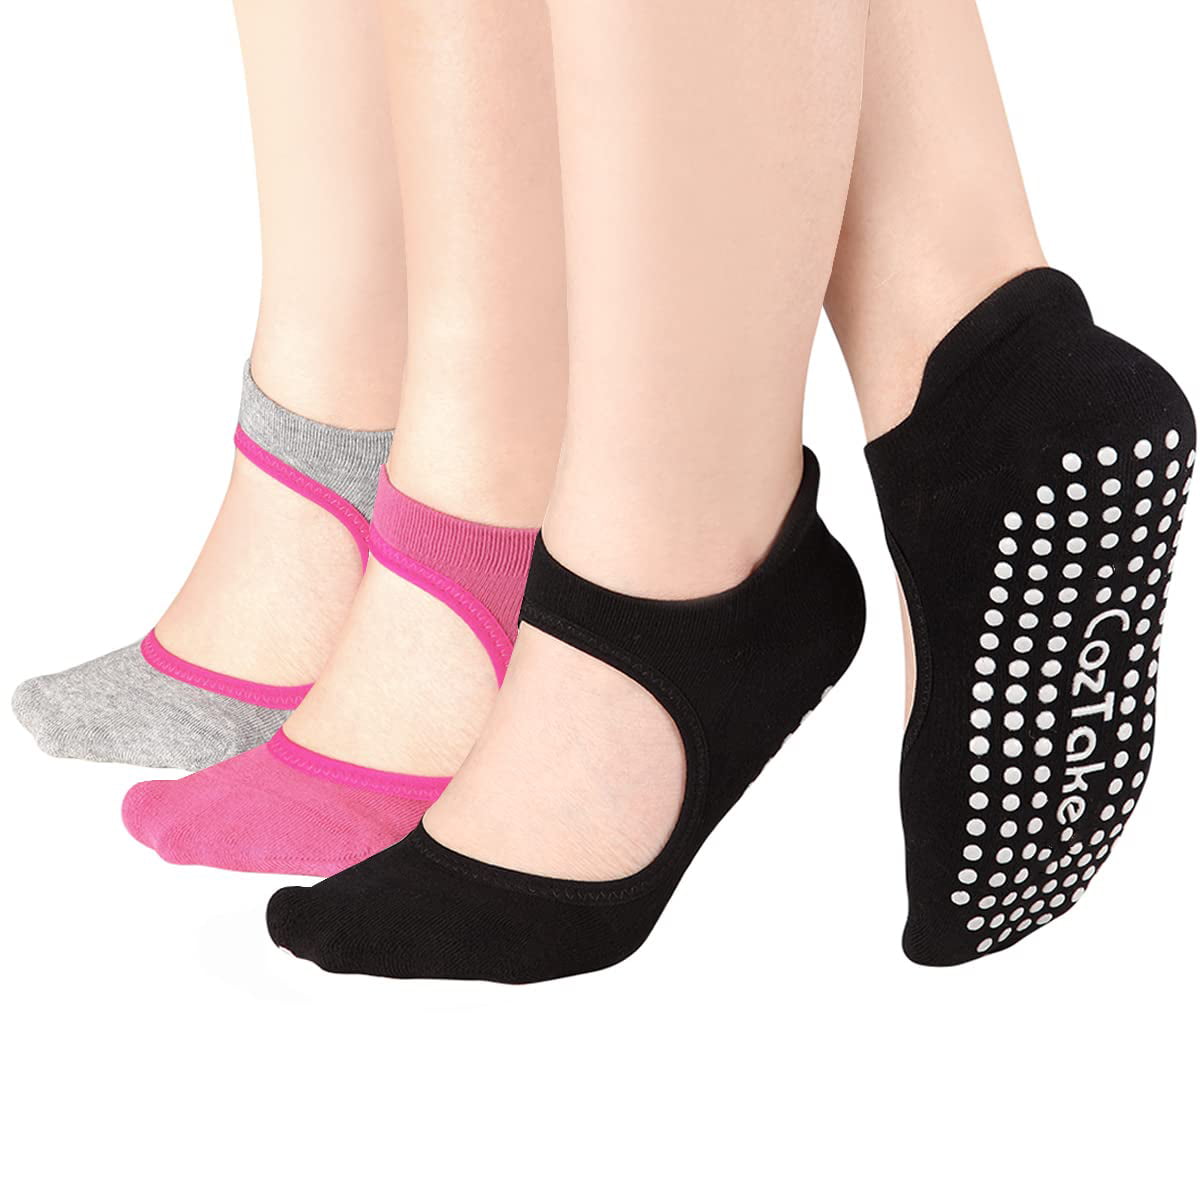 Yoga Socks for Women,Non Slip Sticky Socks with Grips for Pilates Pure Barre  Ballet Dance(G&P&P) - Walmart.com